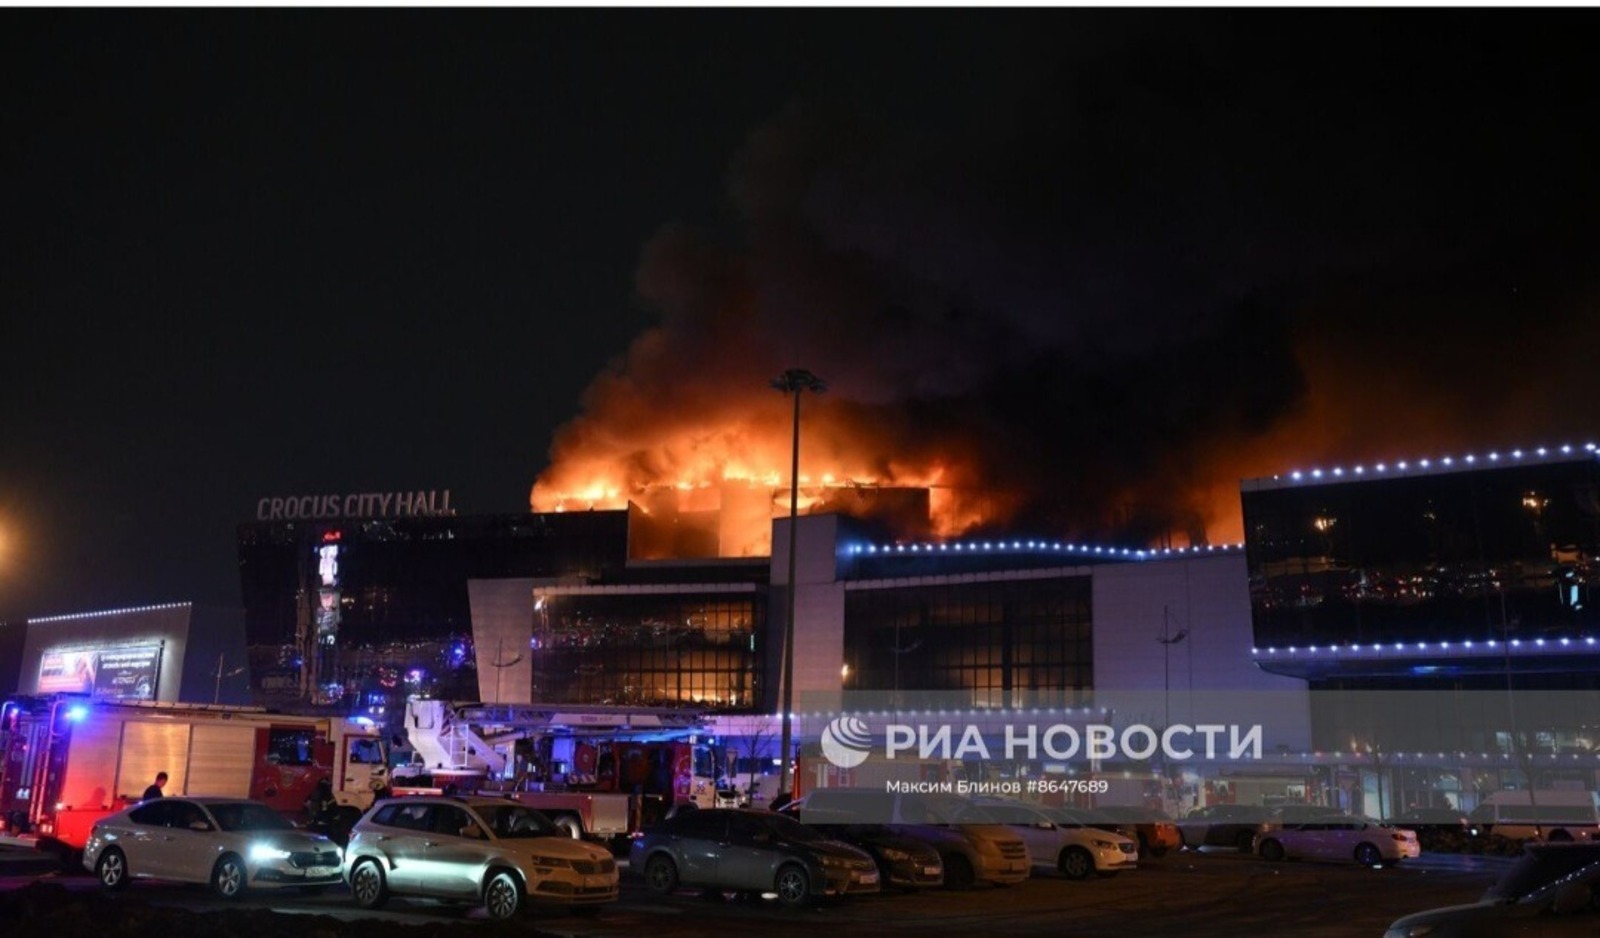 Глава Башкирии выразил соболезнования семьям погибших в «Крокус Сити холле»